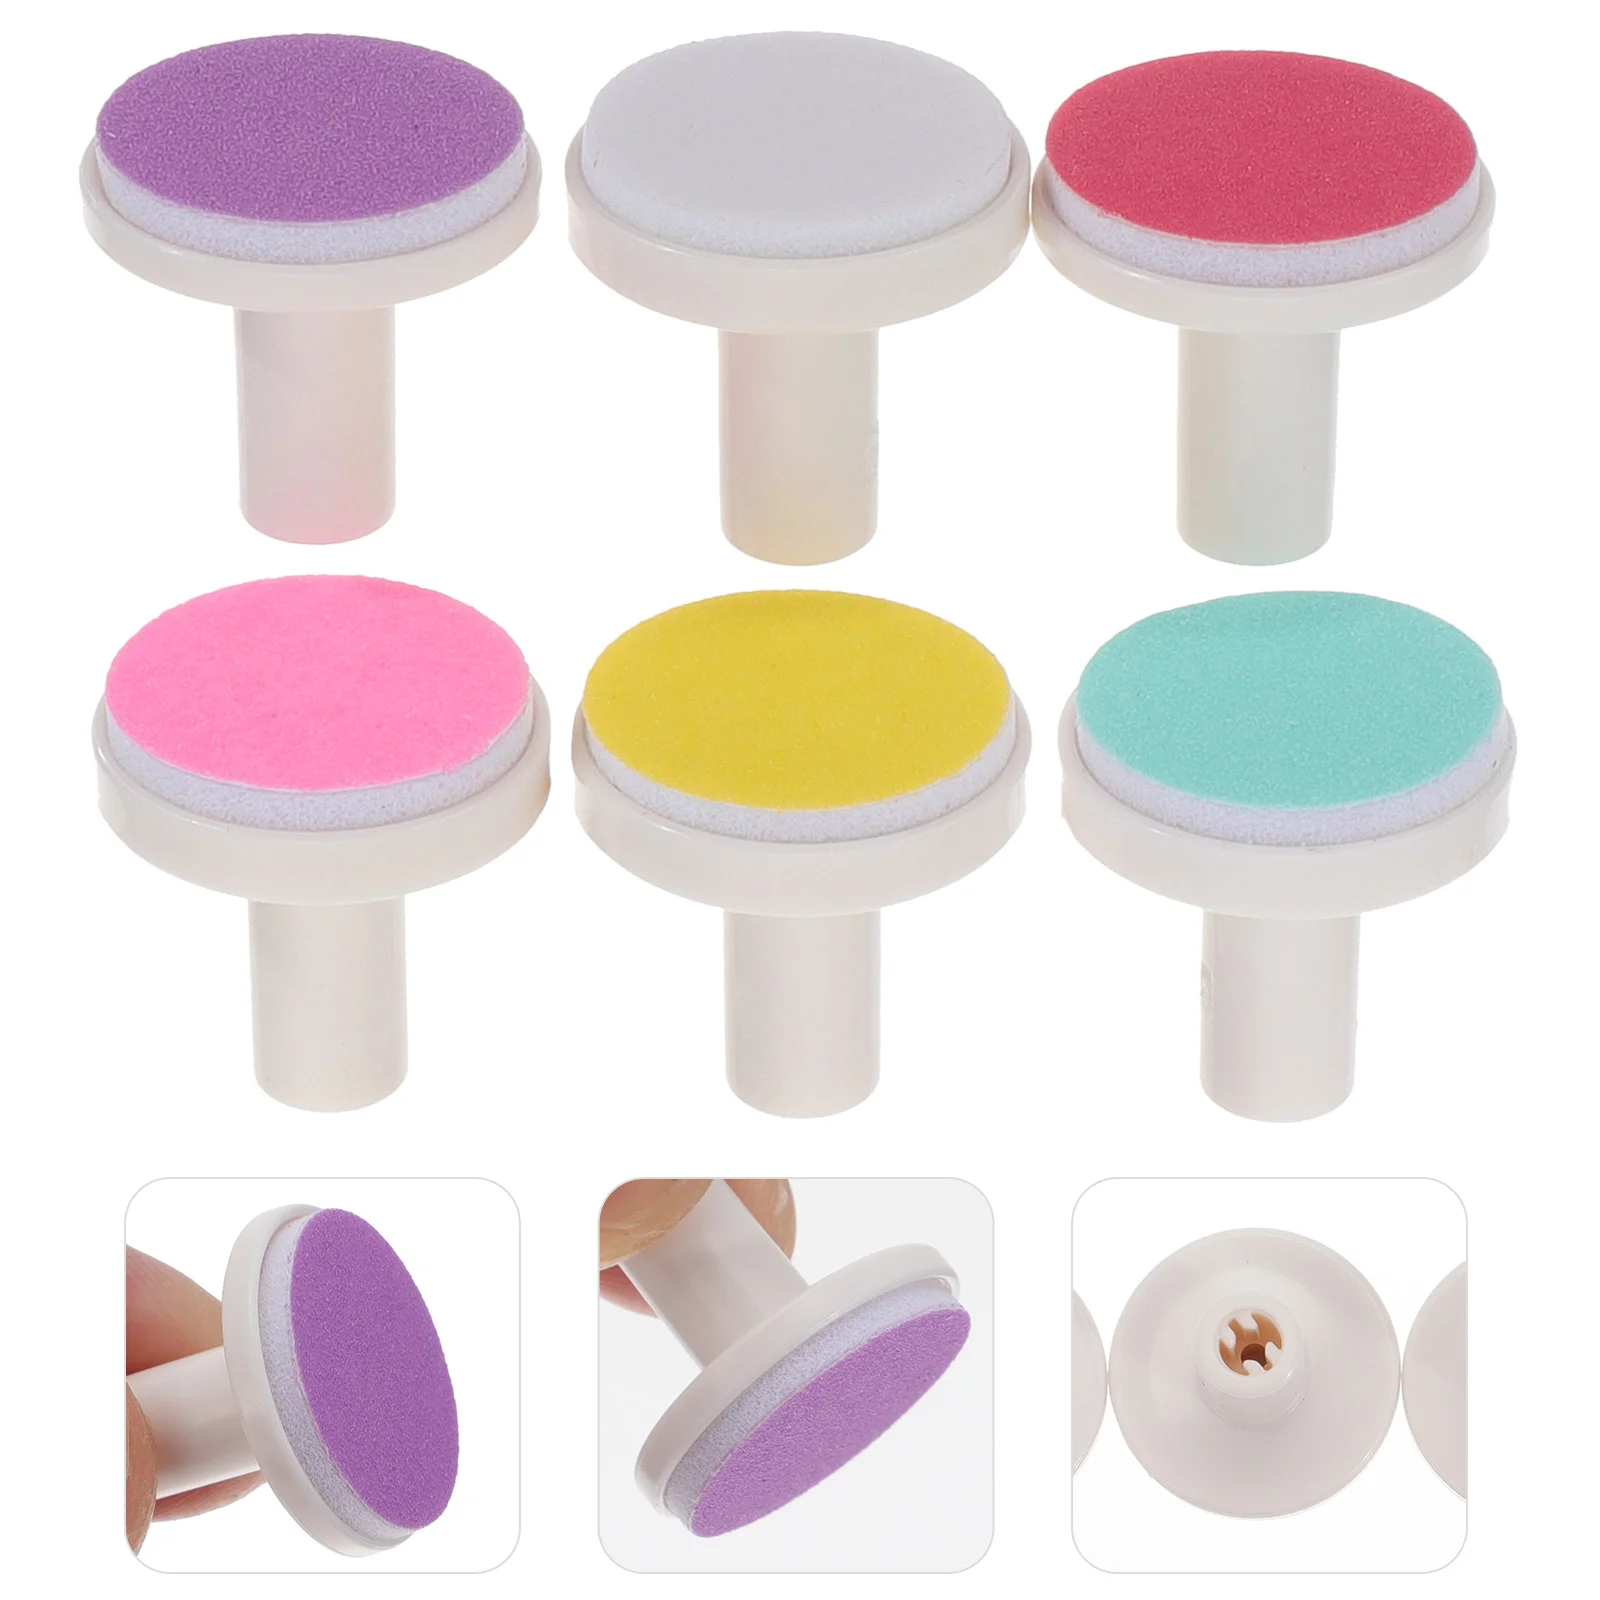 

Детские накладки для пилки для ногтей, сменные накладки, электрические Детские насадки для шлифовки ногтей, электрические накладки для машинки для стрижки ногтей (случайные цвета)